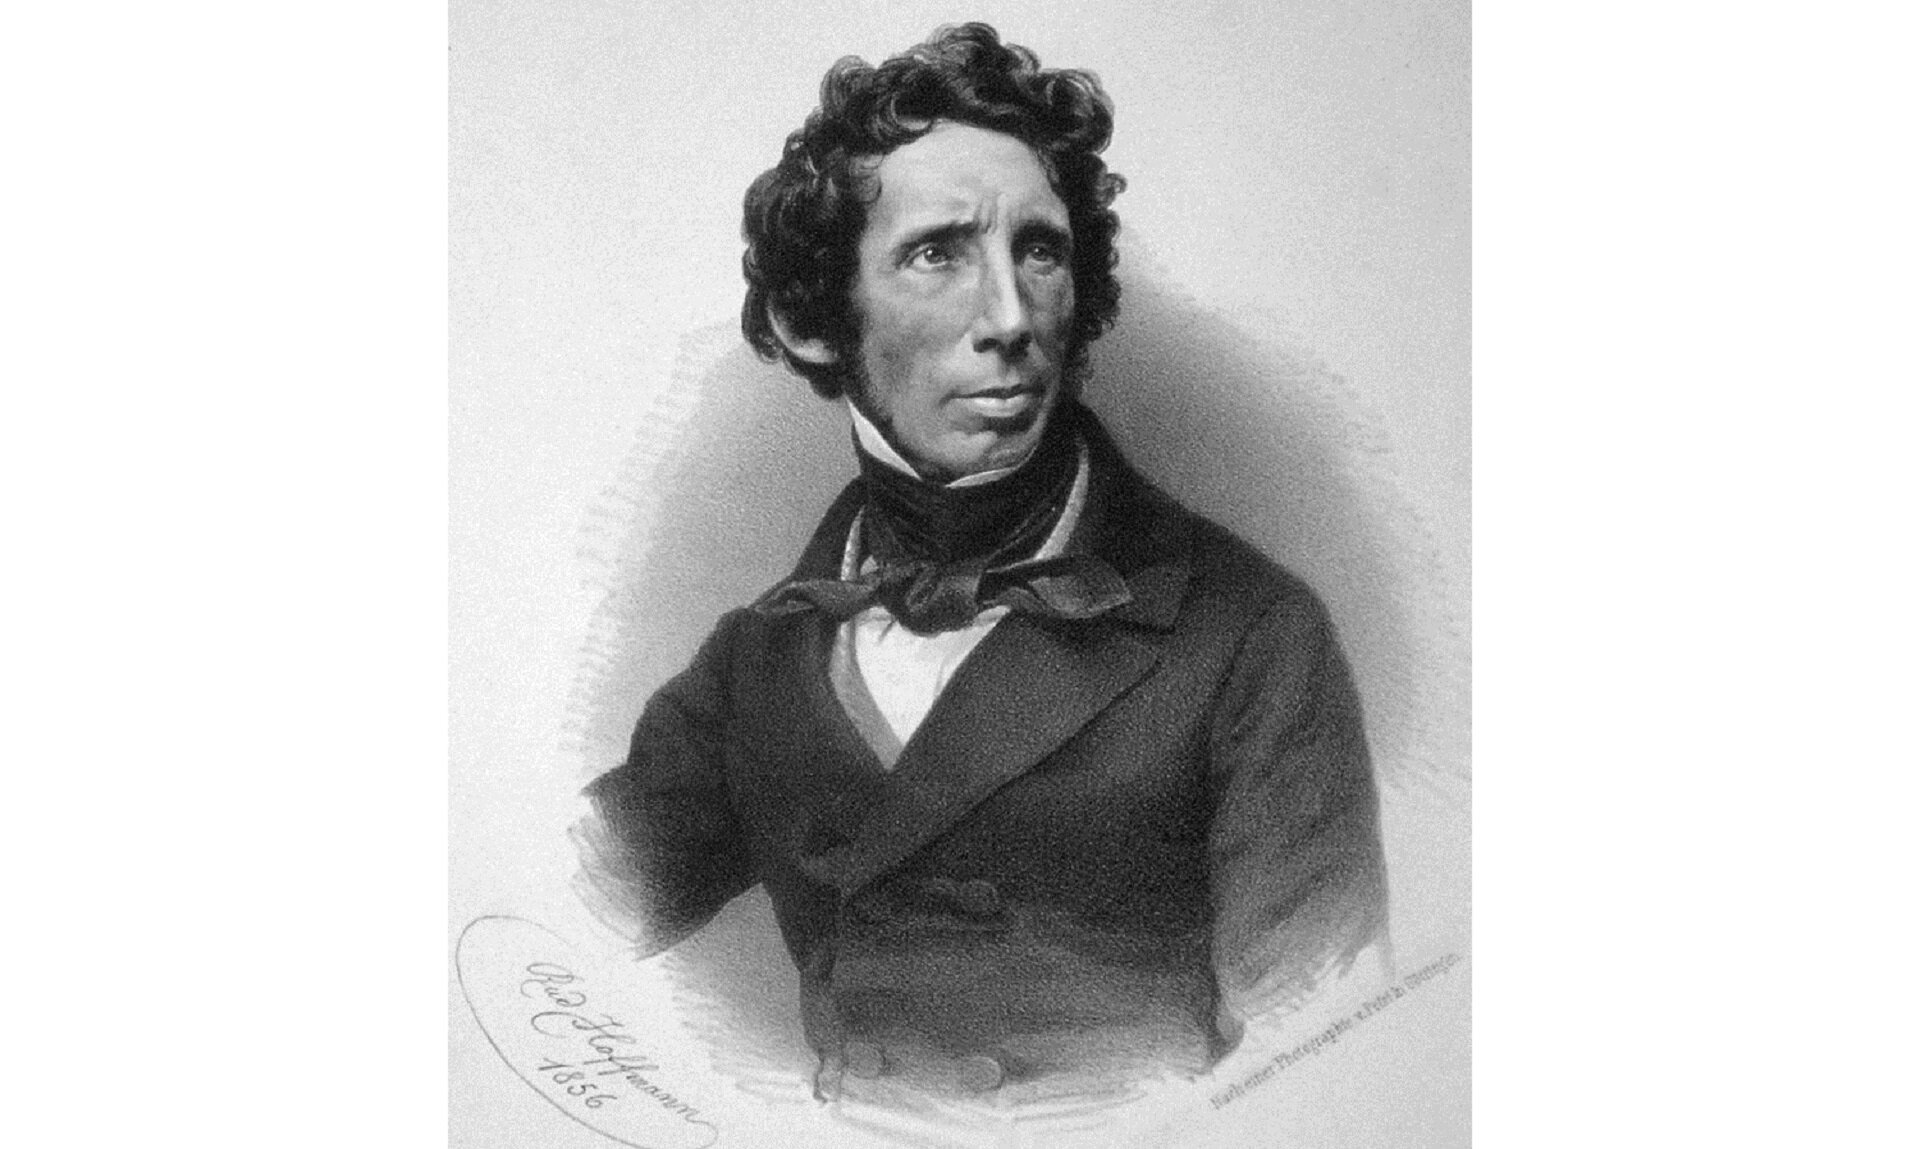 Ilustracja przedstawia czarno biały portret Friedricha Wöhlera. Mężczyzna o ułożeniu frontalnym, patrzący się w prawą stronę obserwującego. Mężczyzna o grubych, kręconych włosach ubrany jest we frak, ma przewiązaną na szyi apaszkę.